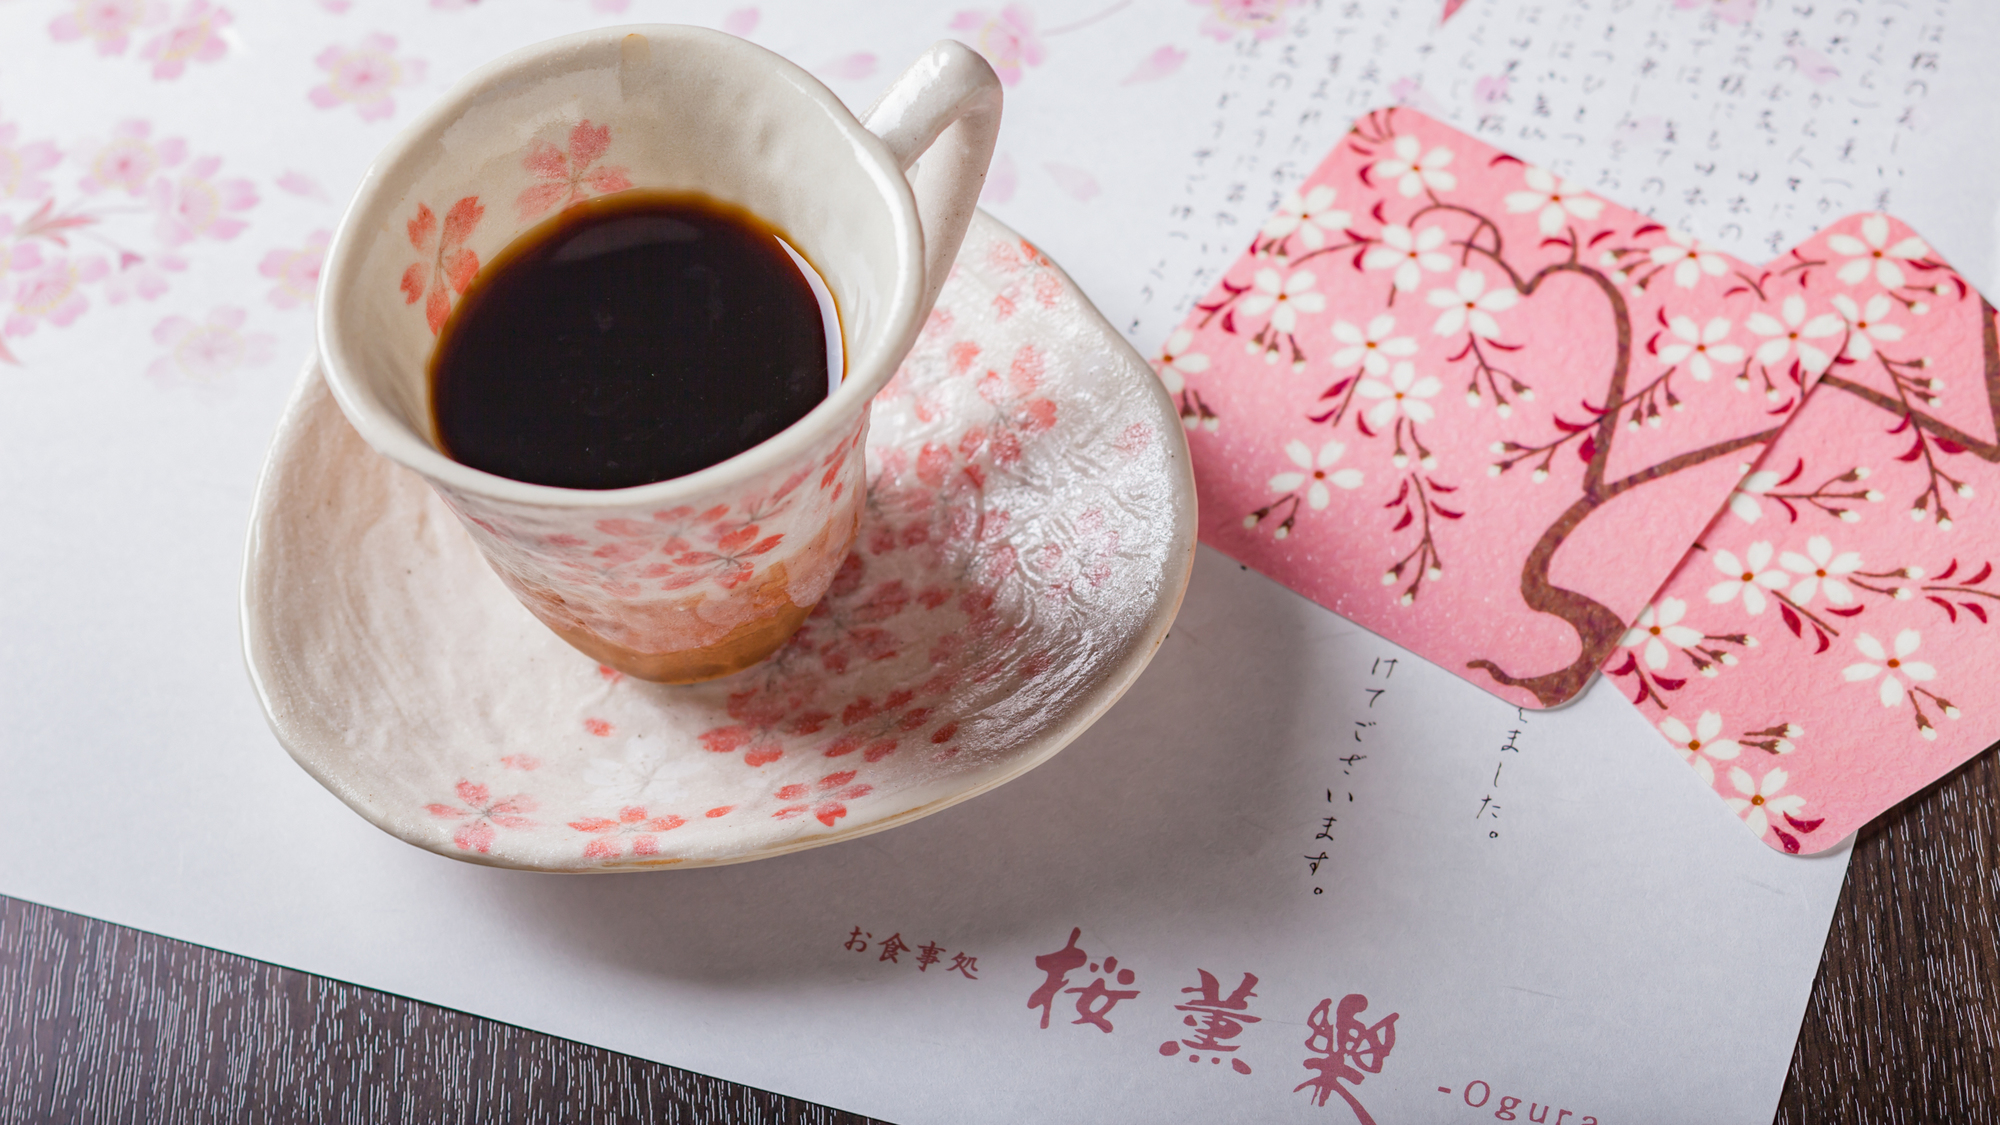 【お食事処-桜薫楽ogura-】桜薫楽でのご朝食後にコーヒーか紅茶をご用意しております。